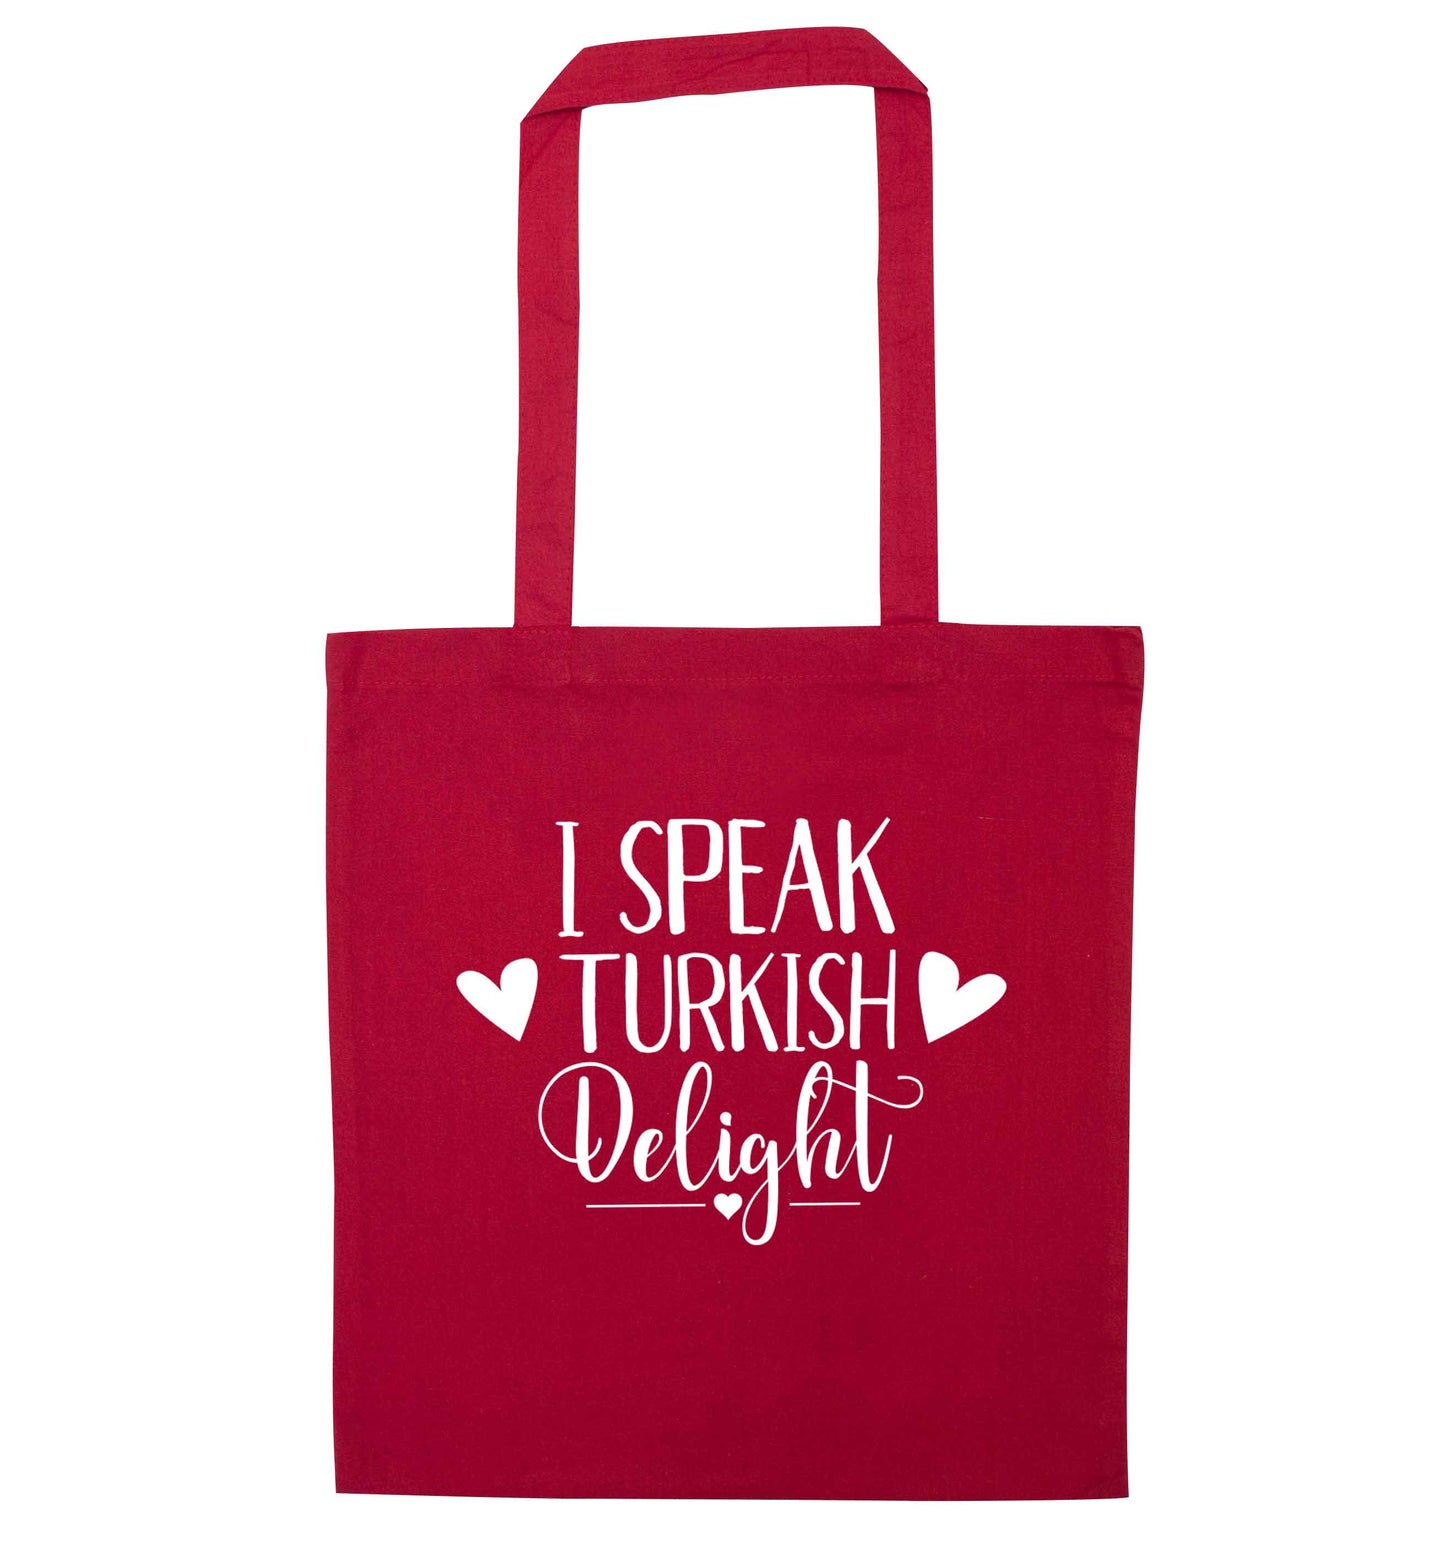 I speak turkish...delight red tote bag